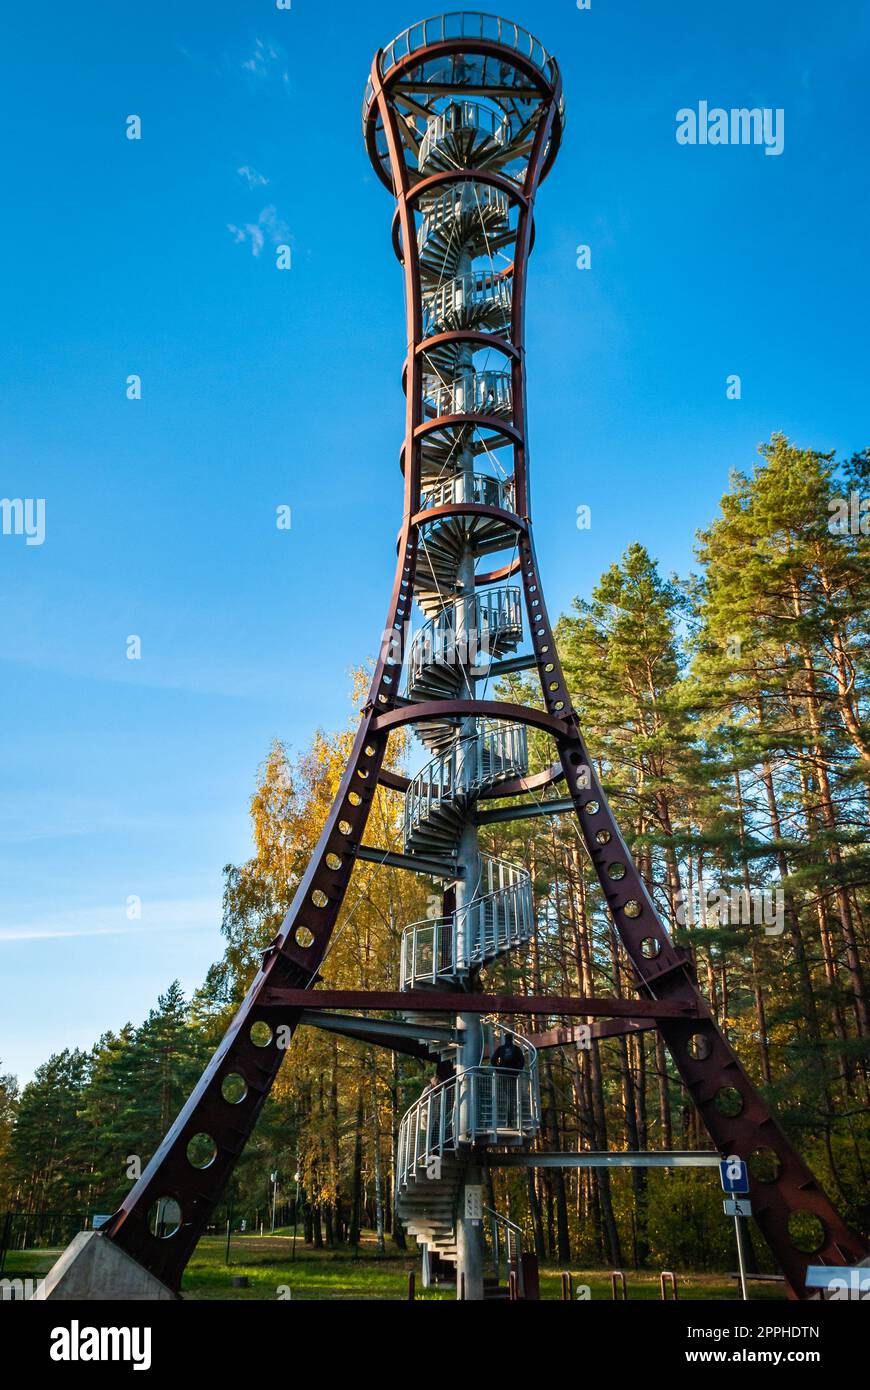 Labanoras Regional Park Tower, Lituania. La torre di osservazione più alta della Lituania sulla riva del lago Baltieji Lakajai nel parco regionale di Labanoras. Foto Stock